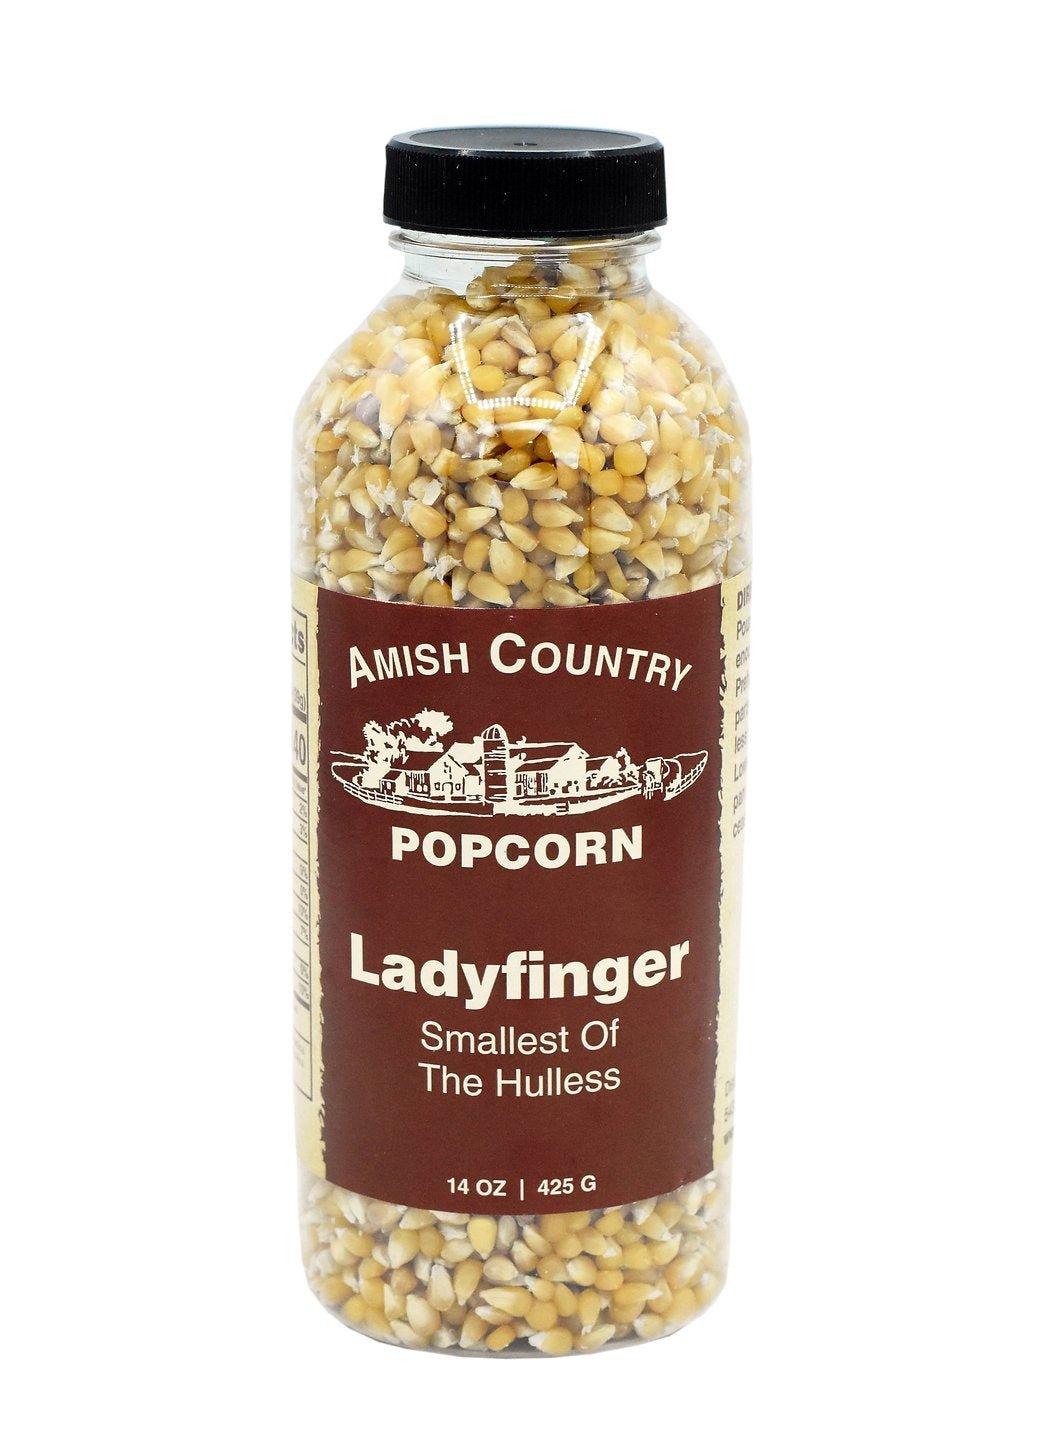 Landyfinger -Bio-Popcorn 425g Flasche - Bobbis Store Hunde